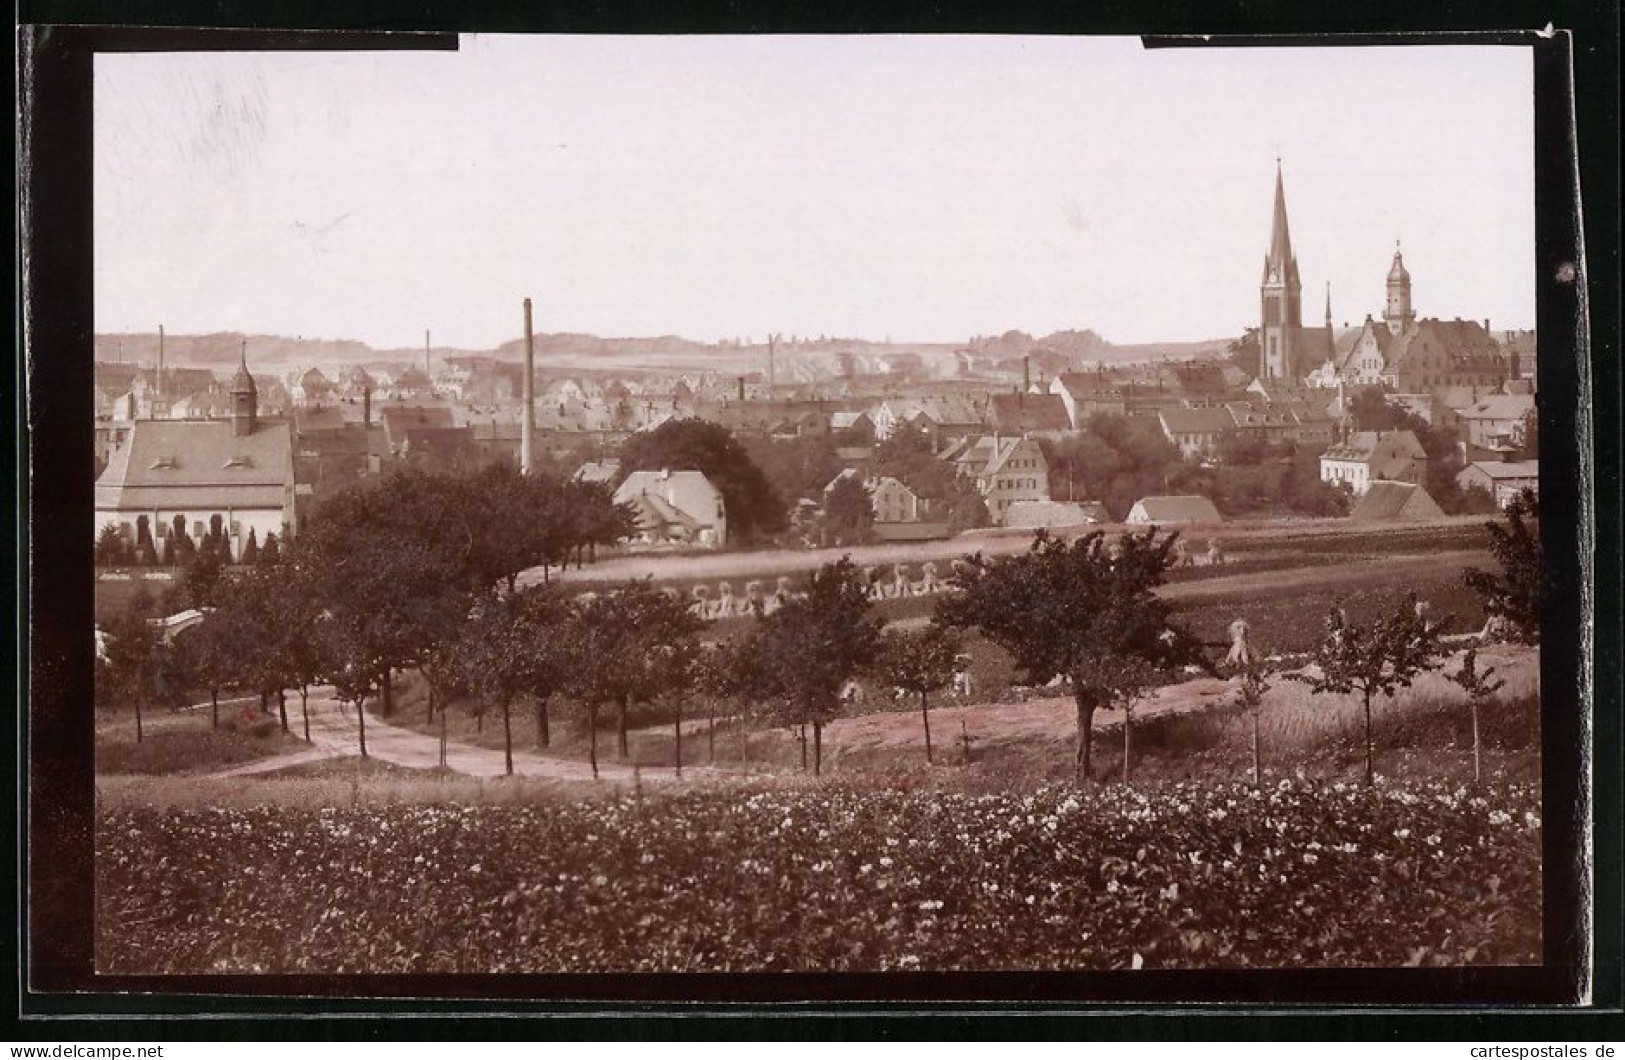 Fotografie Brück & Sohn Meissen, Ansicht Geringswalde, Blick Auf Die Stadt Mit Den Kirchen  - Orte